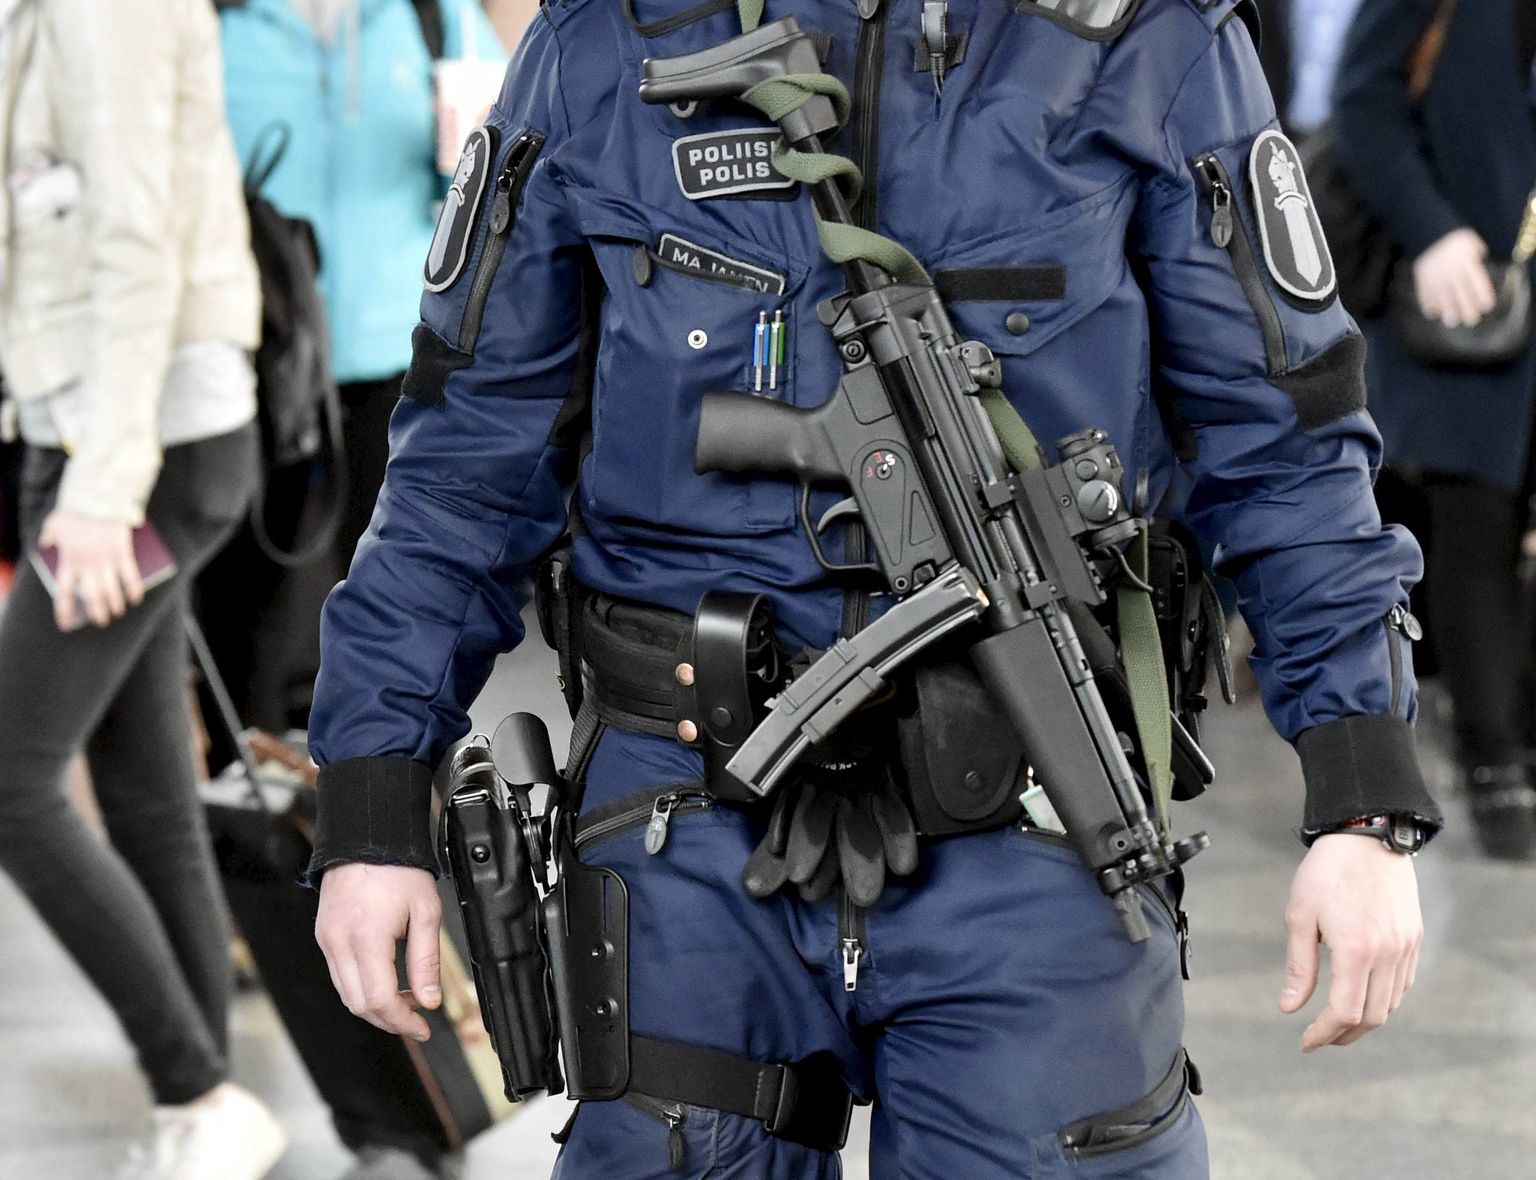 Soome politseinik, 13. aprill 2017. Foto on illustreeriv